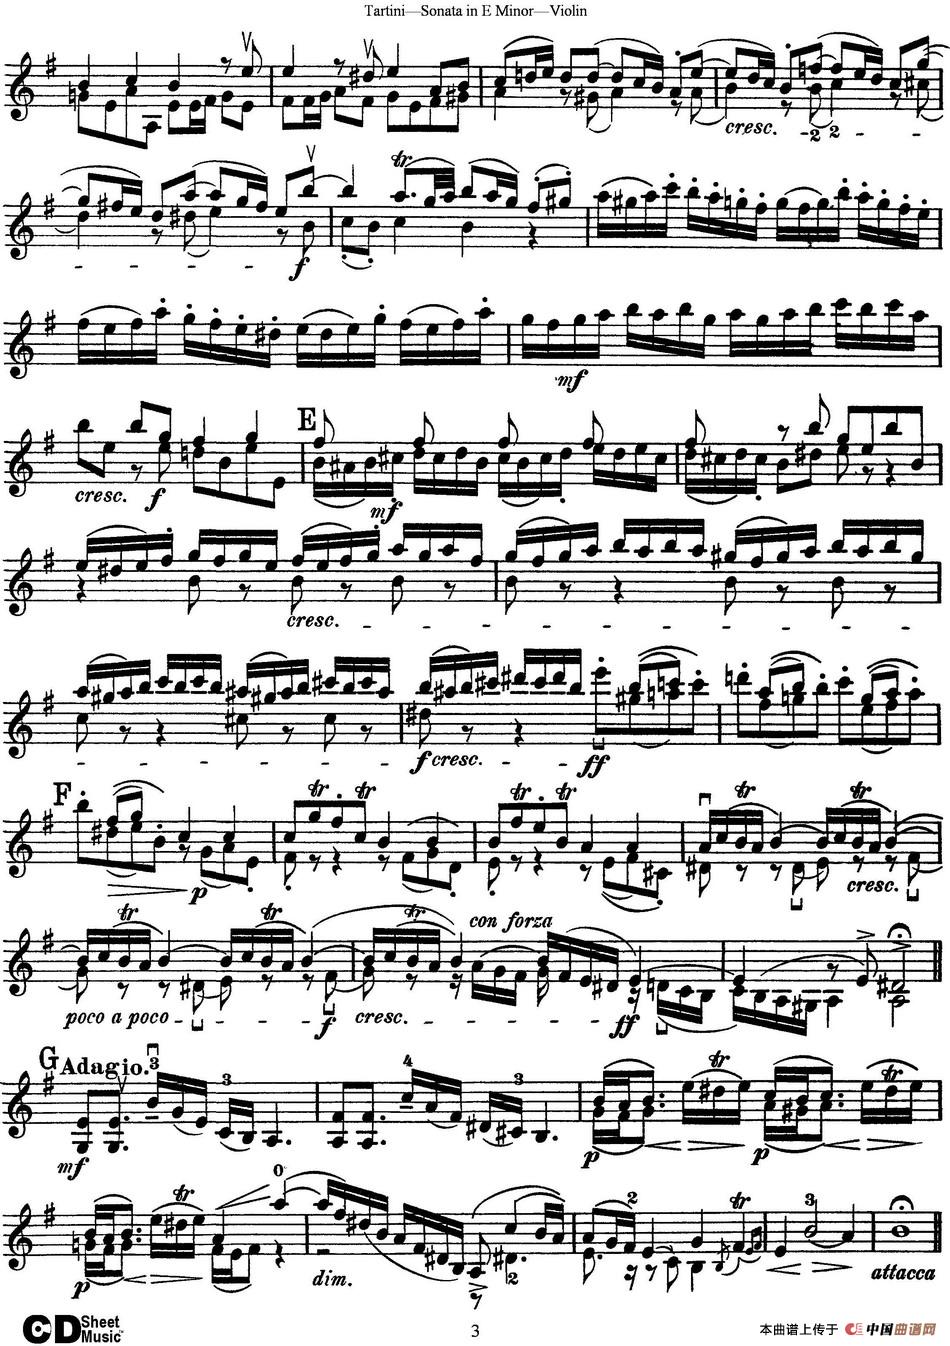 Violin Sonata in E Minor